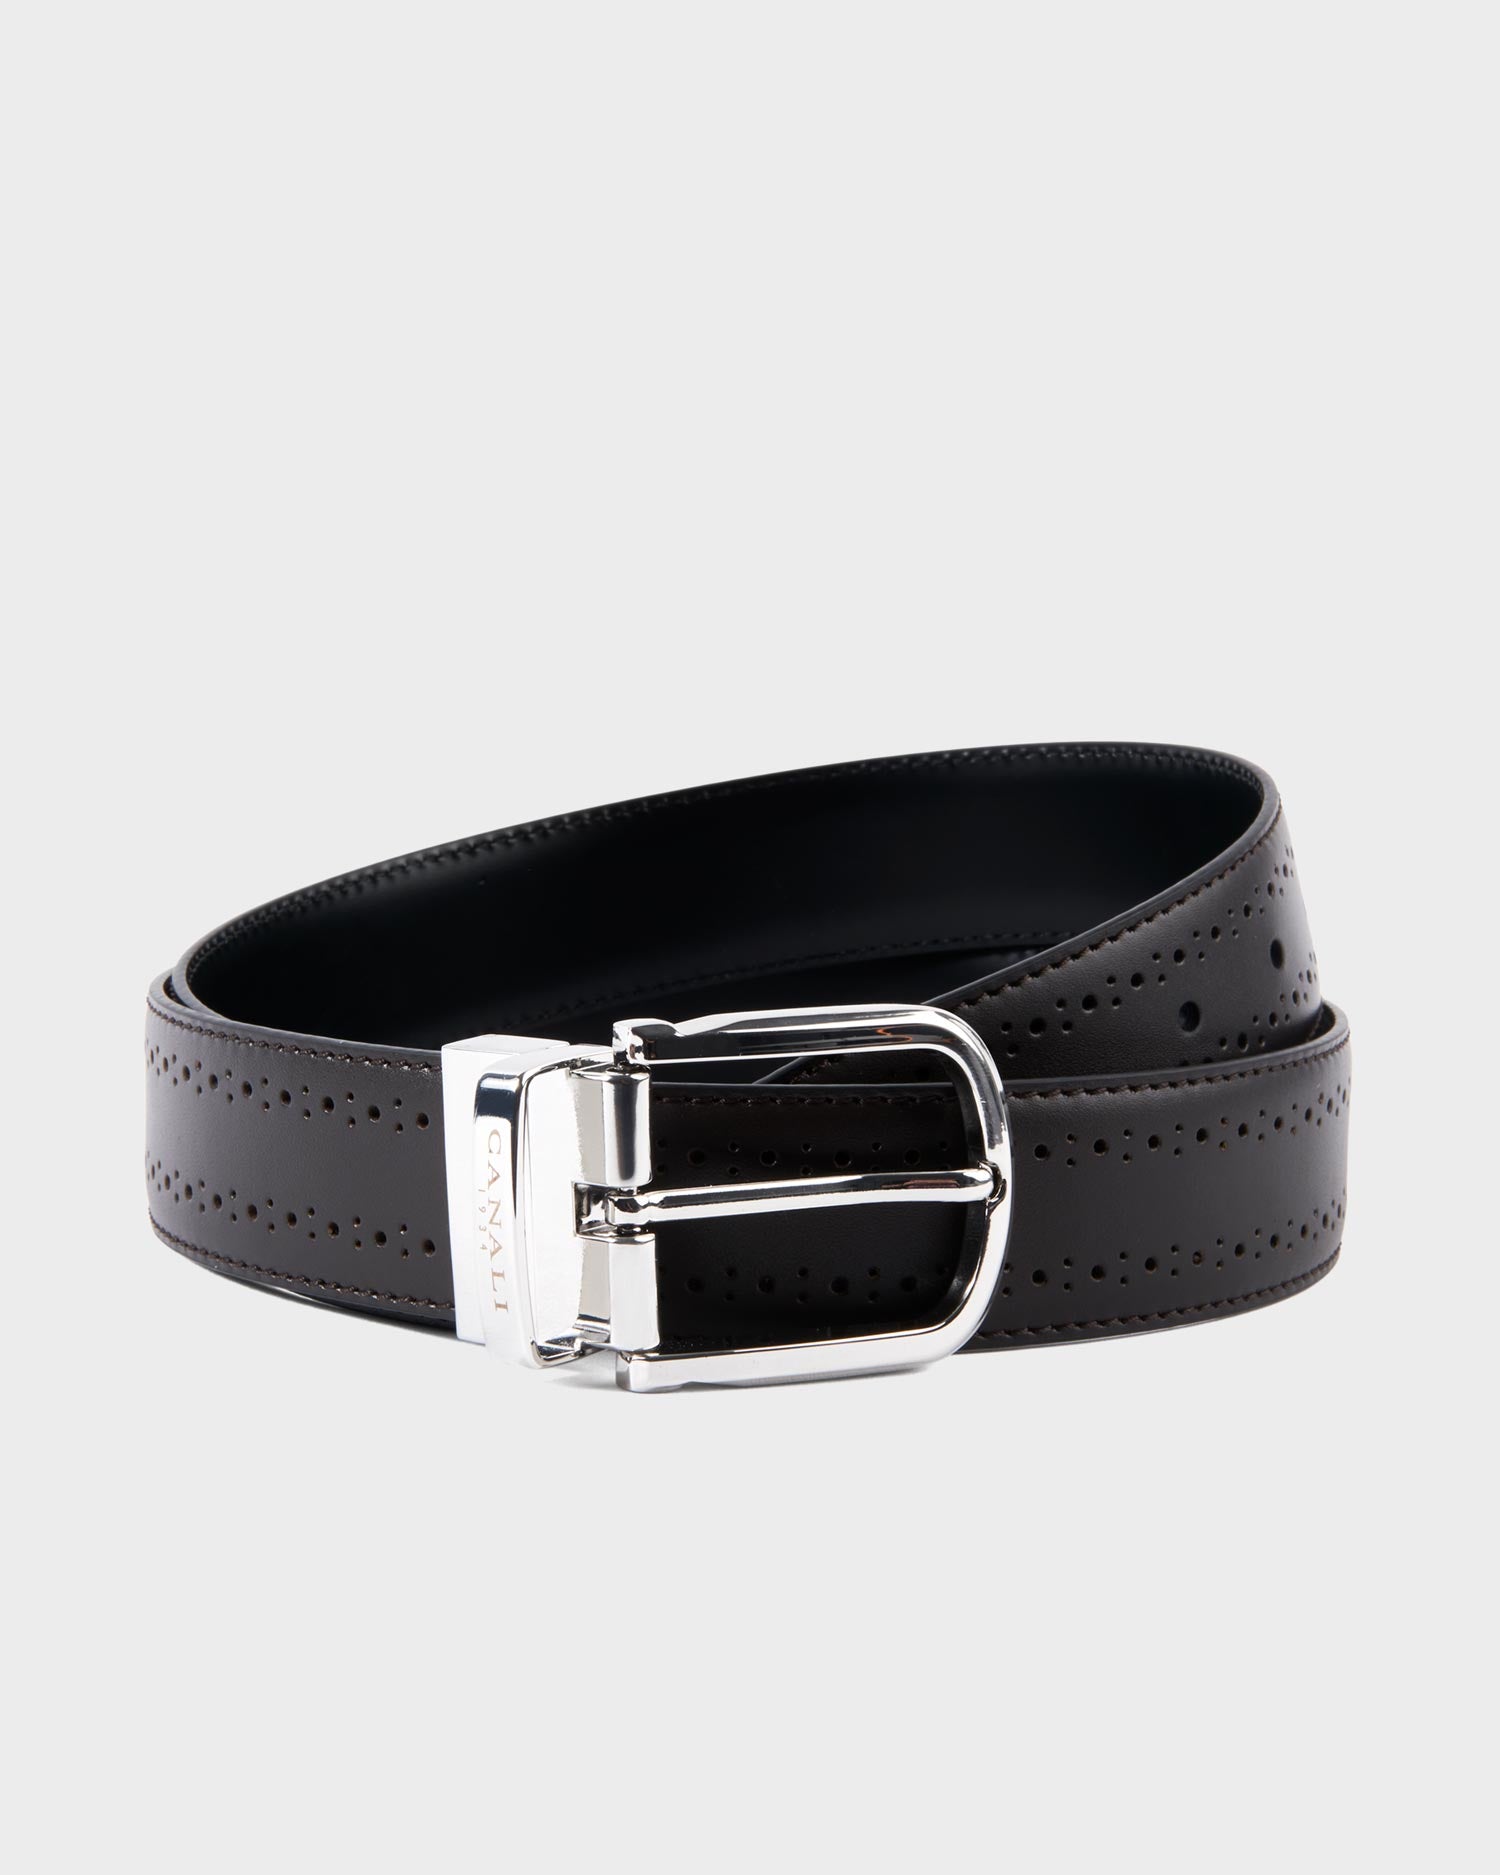 Belts– Parker & Co.